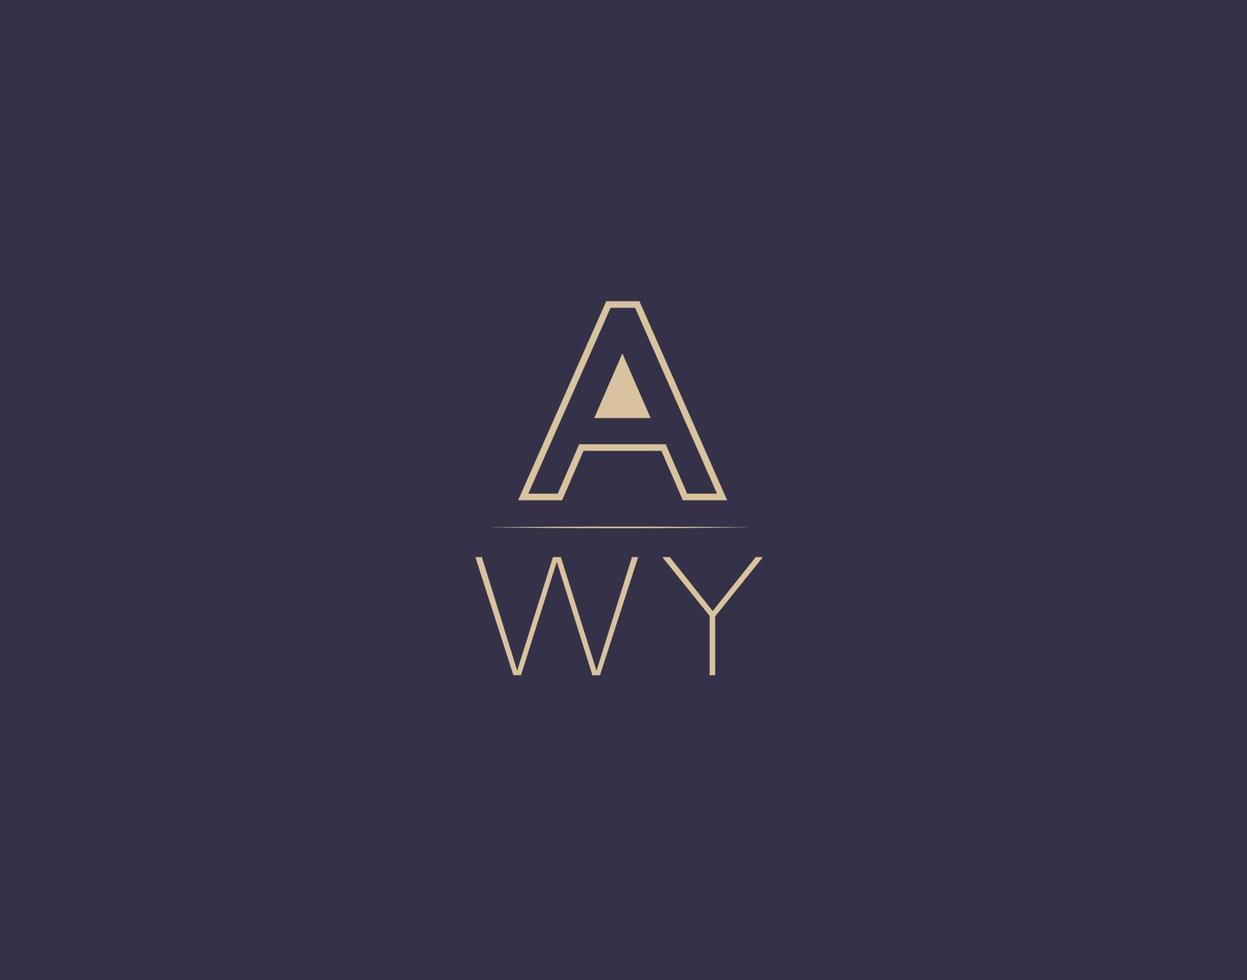 design de logotipo de carta awy imagens vetoriais minimalistas modernas vetor